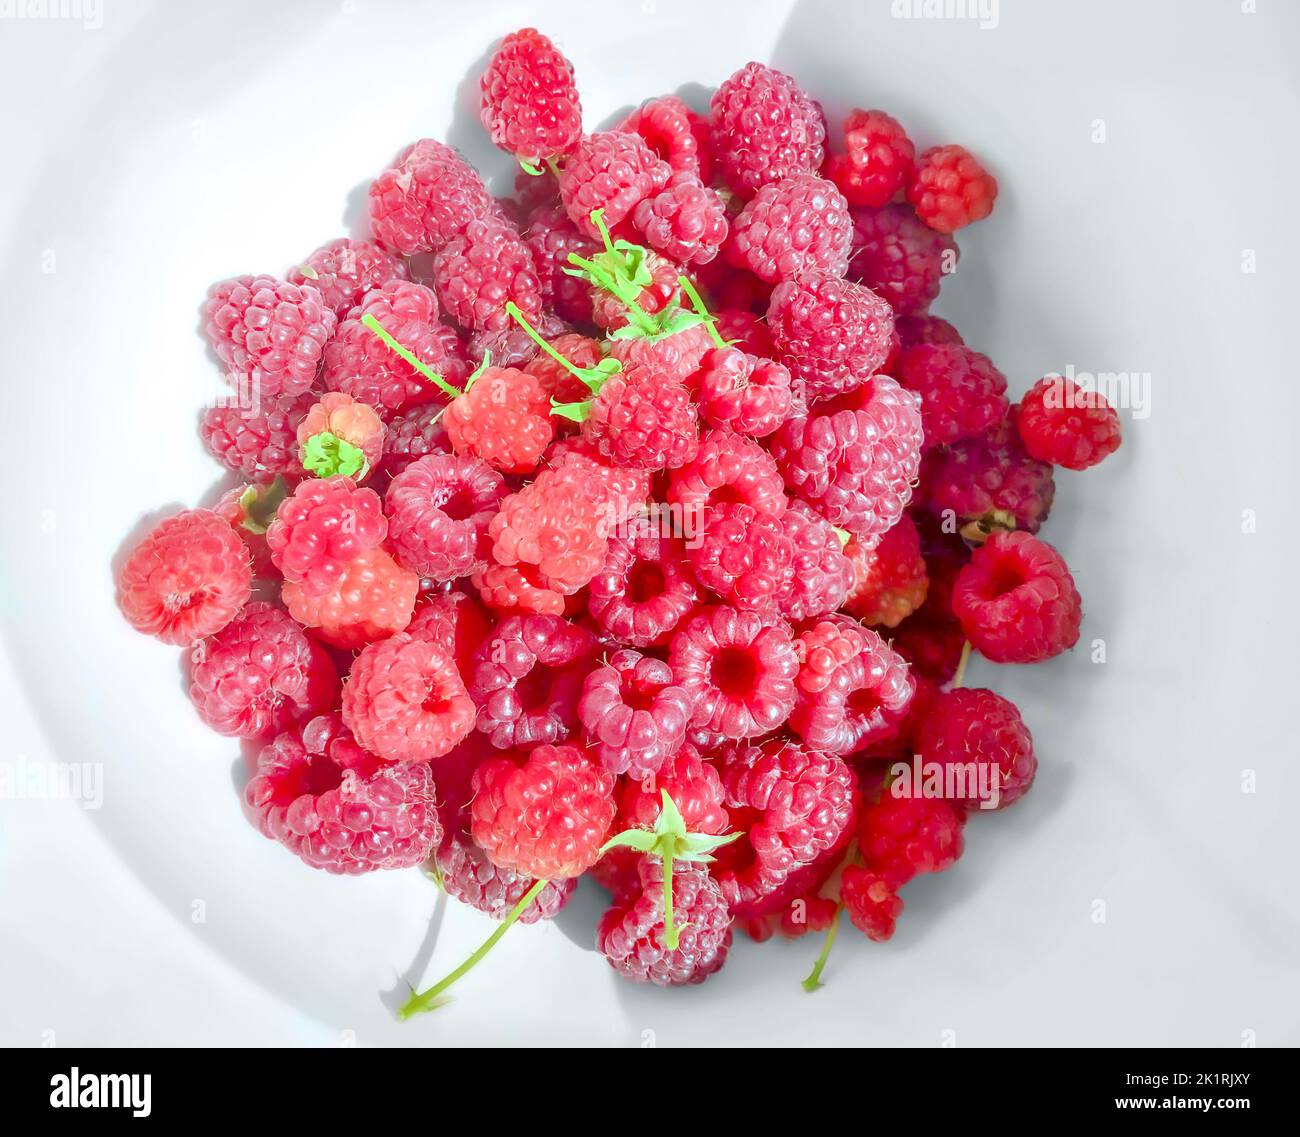 Frambuesas frescas enteras sobre un plato blanco, desde arriba. Fruta fresca, madura, roja y dulce de Rubus idaeus, la frambuesa cultivada europea. Foto de stock